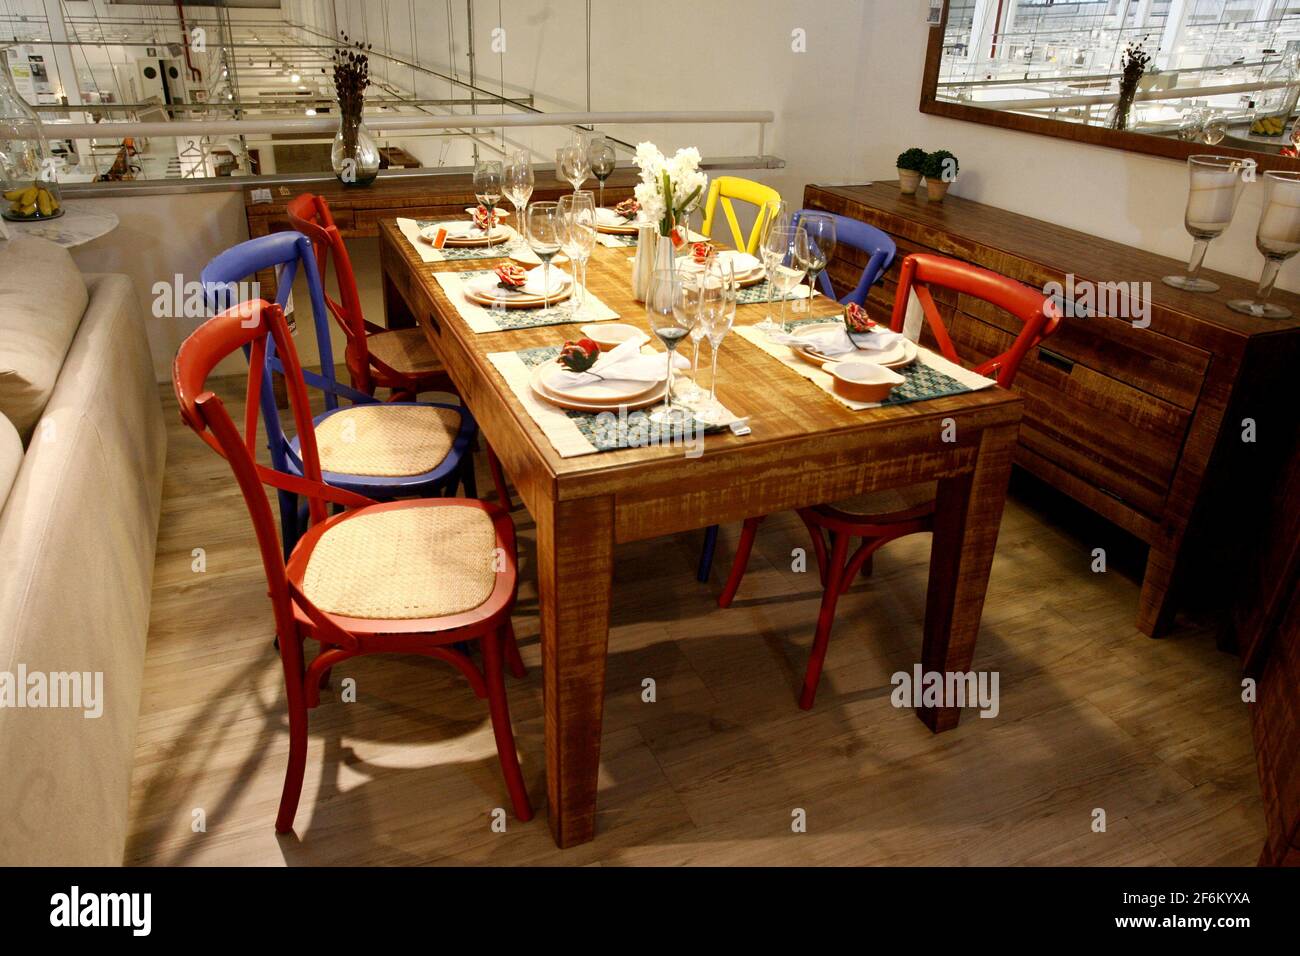 salvador, bahía / brasil - 1 de abril de 2015: Guilherme Bender diseño  comedor con sillas y mesas se ve en una tienda en la ciudad de Salvador  Fotografía de stock - Alamy